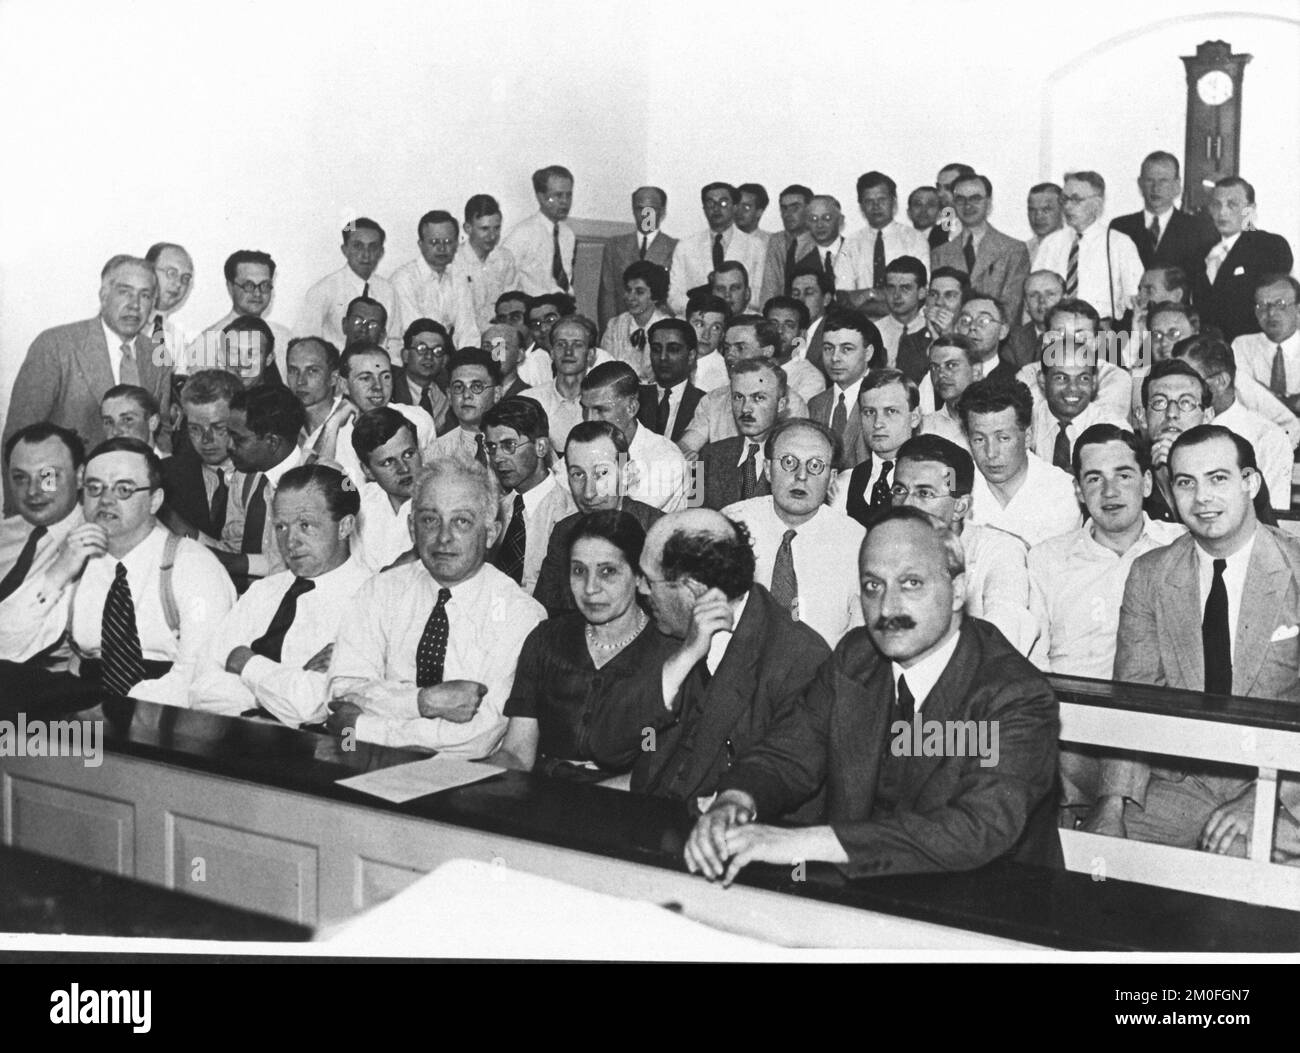 Niels Bohr Institute 1921 - Niels Bohr steht ganz links. AISO die deutschen Physiker Werner Heisenberg (Nr. 4 von links in der zweiten Reihe) und Carl-Friedrich von Weizcker (Nr. 3 von links in der ersten Reihe) - beide arbeiteten später an der Entwicklung der nuklearen Kapazitäten Nazideutschlands. Stockfoto